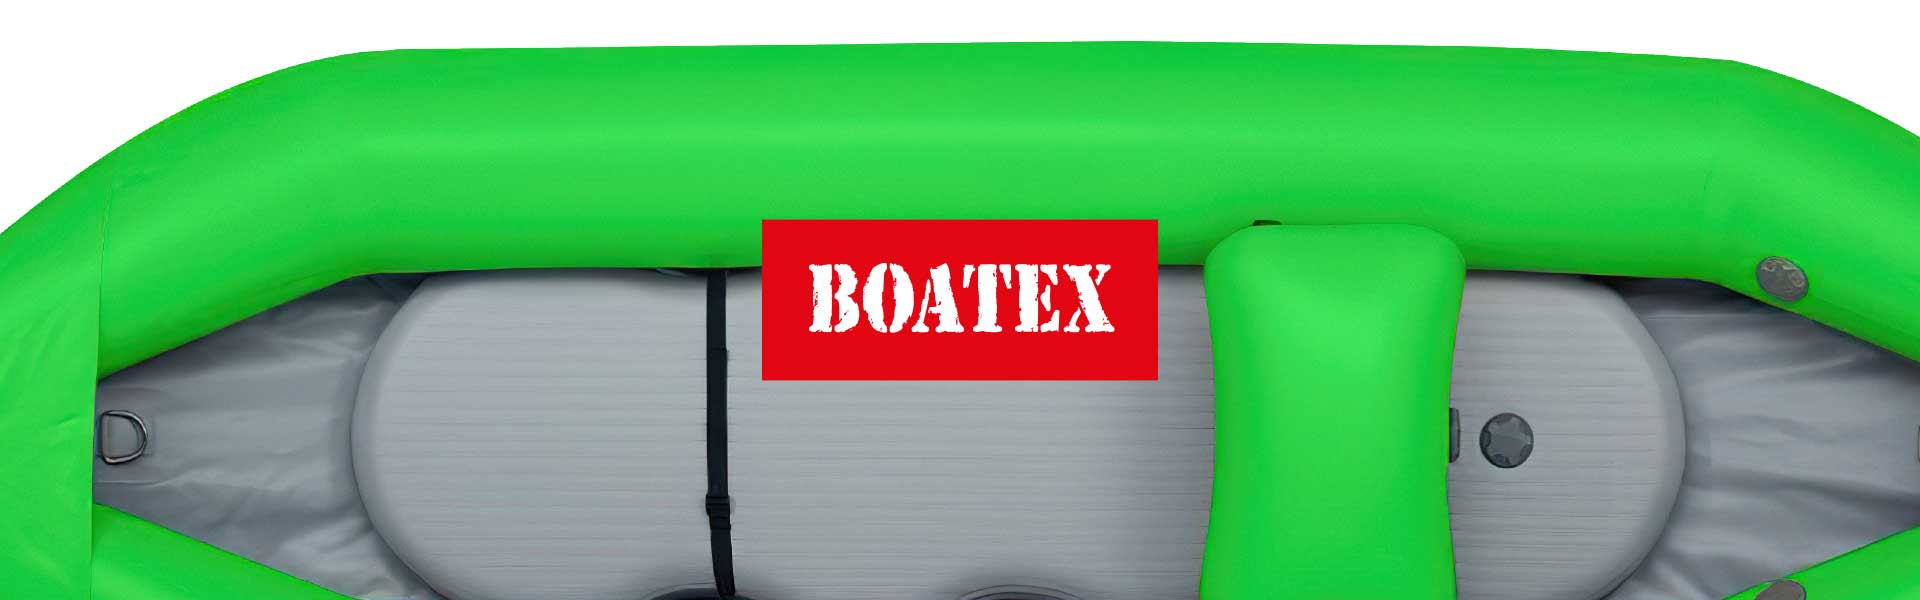 BOATEX 800 г/м.кв травянисто-зеленого цвета – 4,93 $ за м.кв